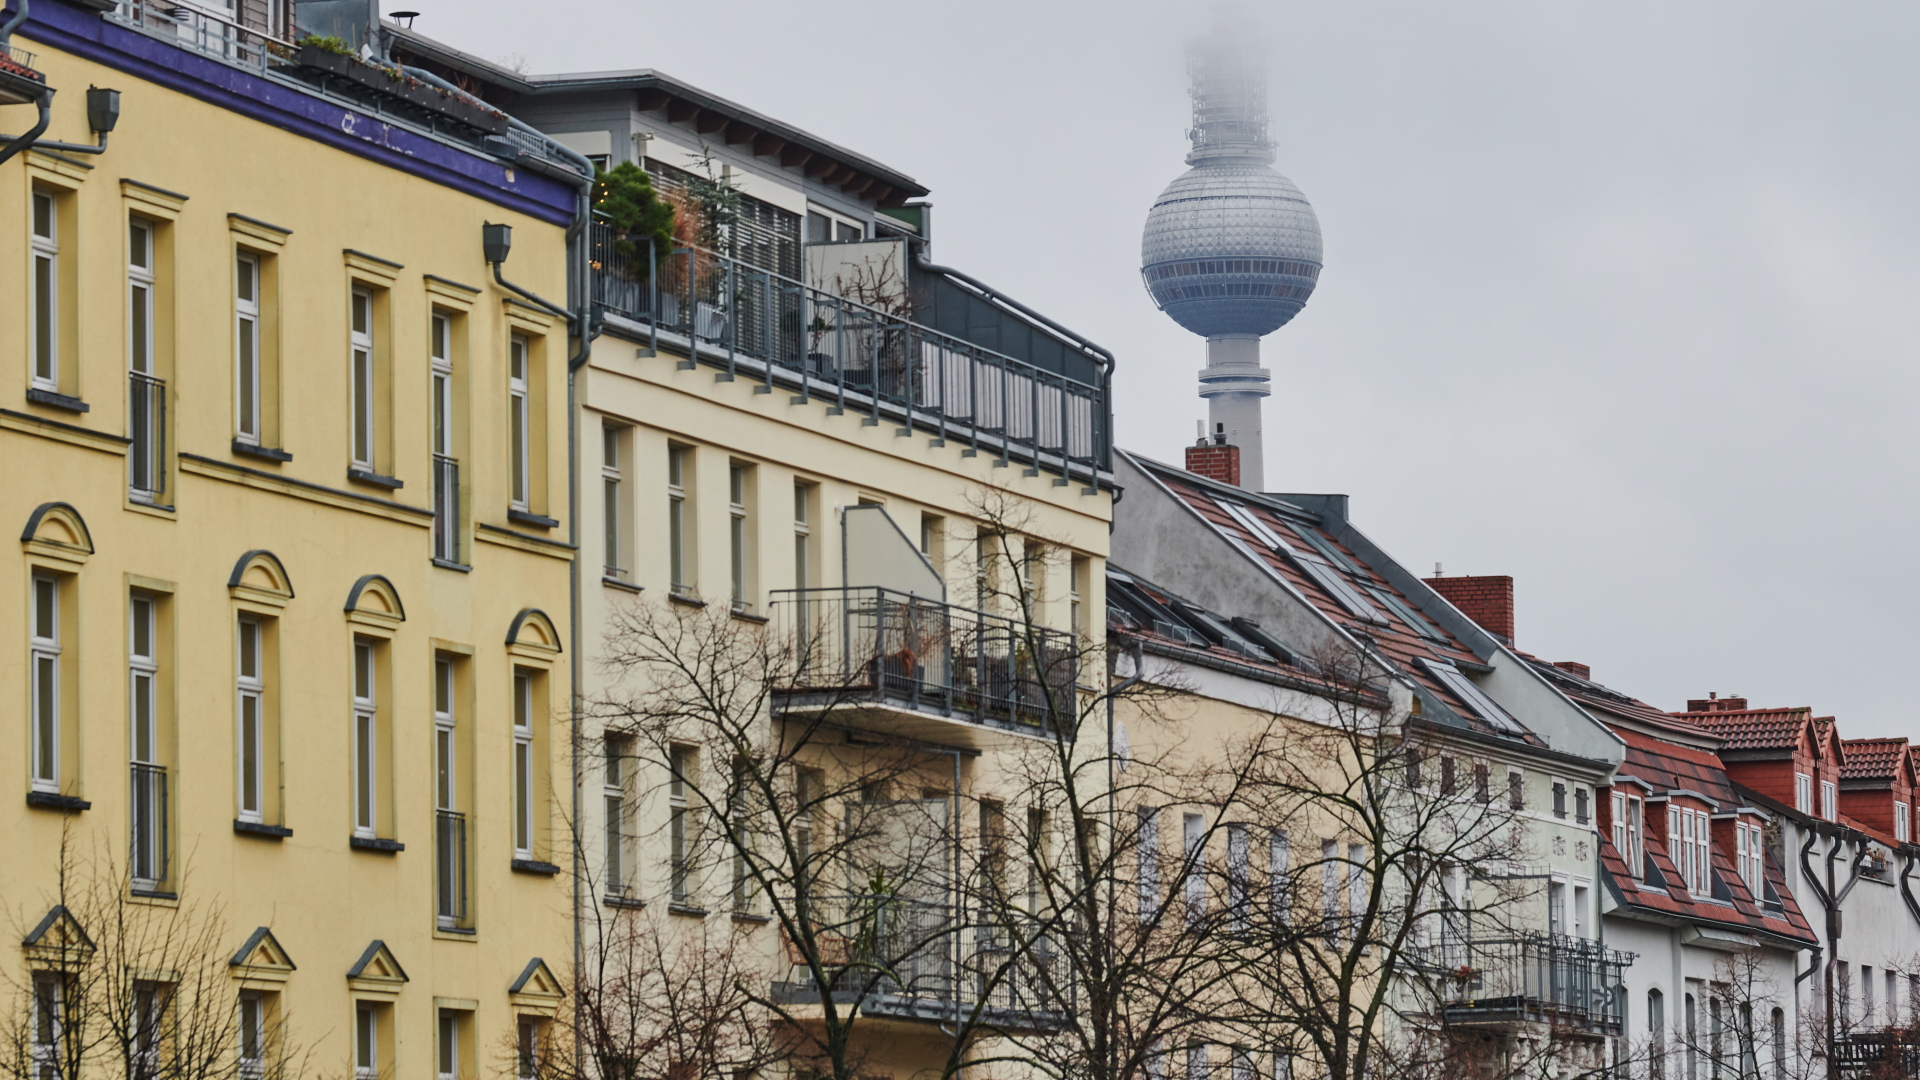 Wohnhäuser in Berlin mit dem Fernsehturm im Hintergrund